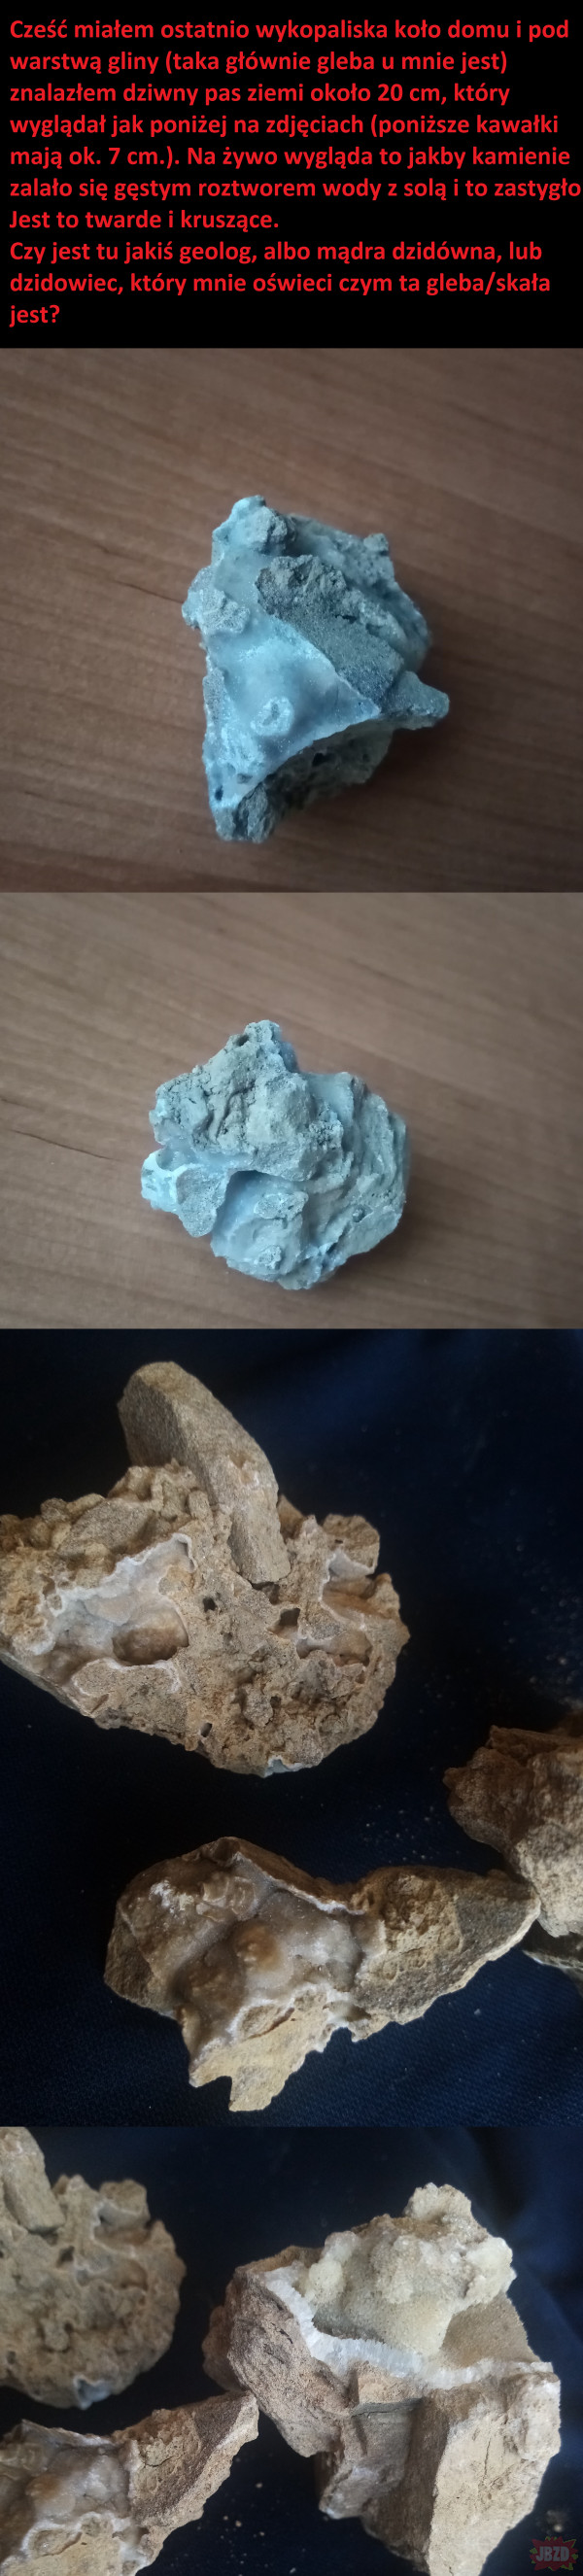 Co to za skała?